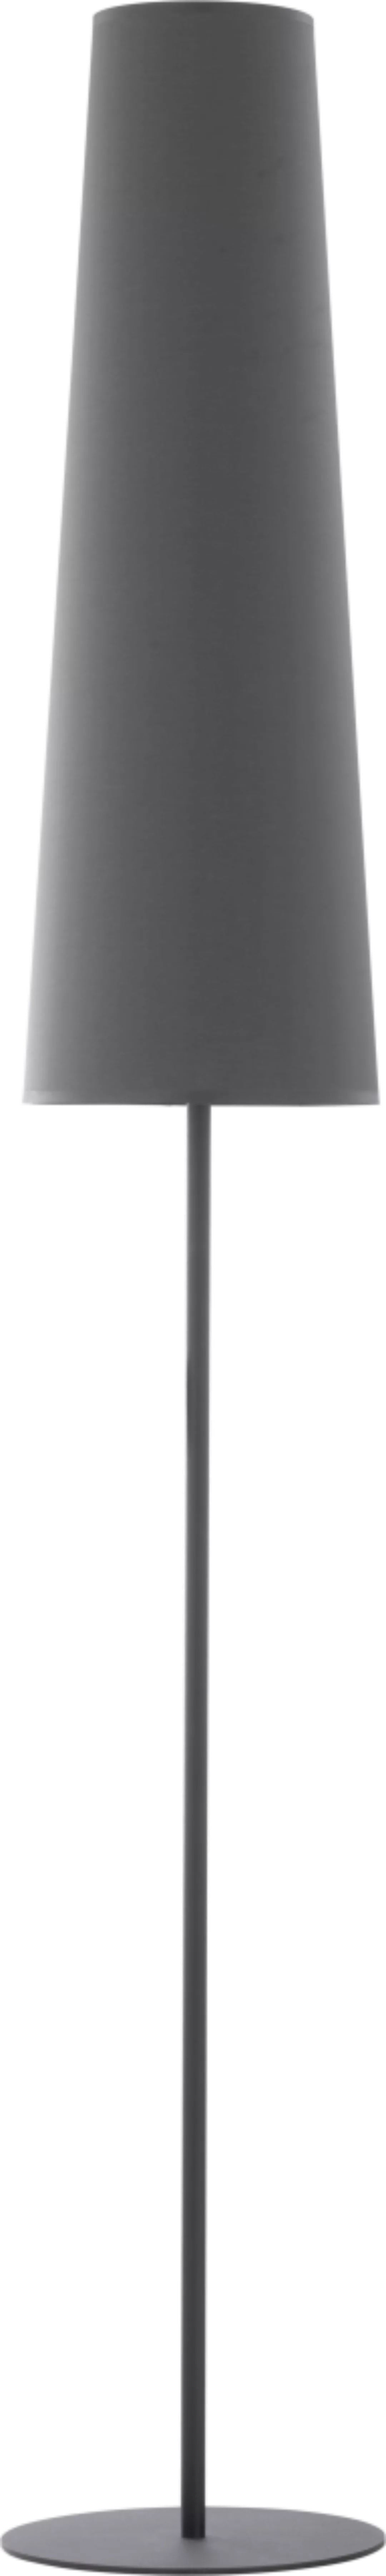 Stehleuchte Grau Metall Stoff 168 cm Umbrella günstig online kaufen